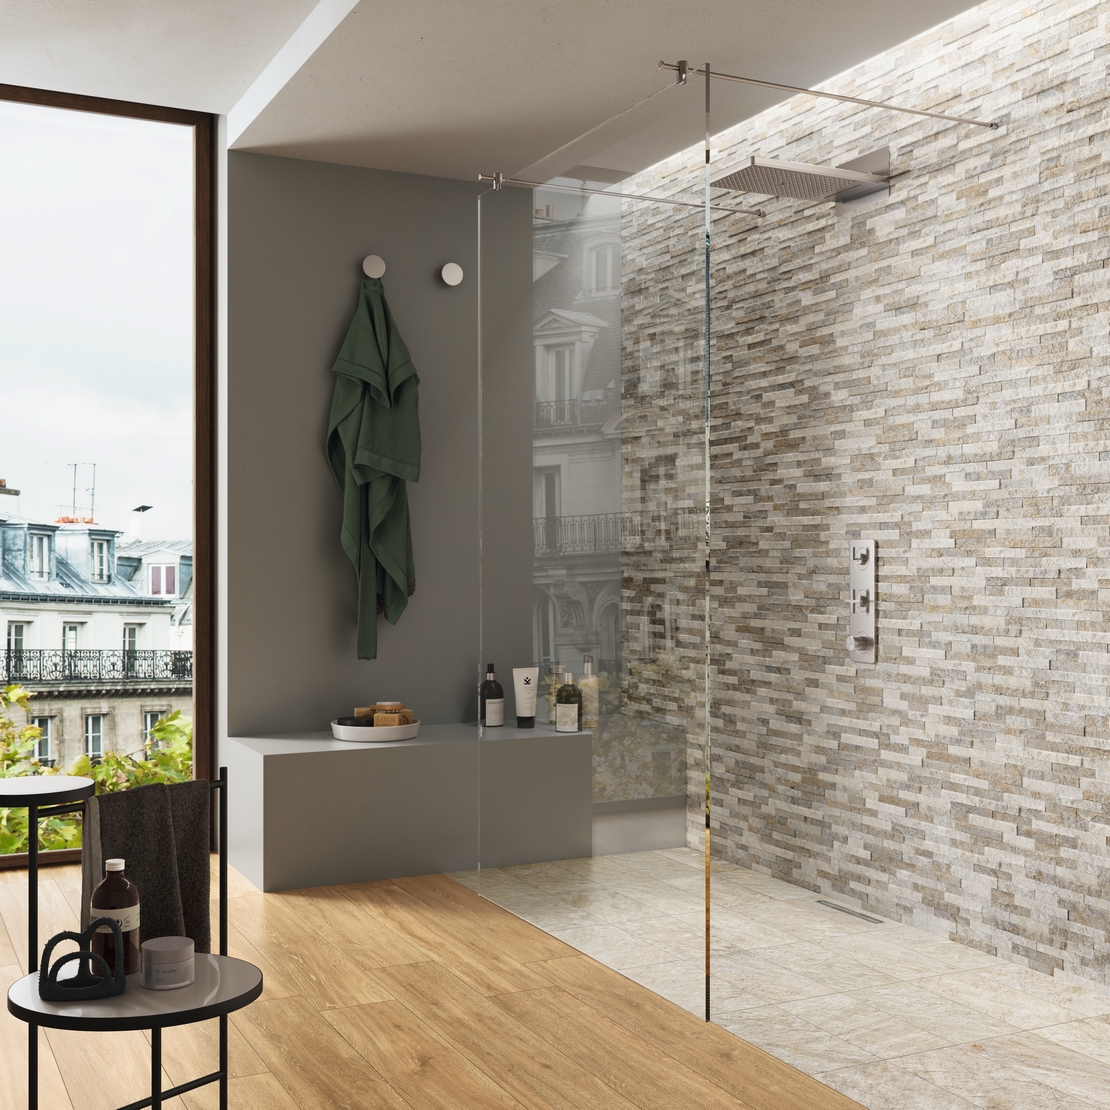 Salle de bains moderne avec douche dans un effet pierre rustique grise et sol en bois beige. - Inspirations Iperceramica